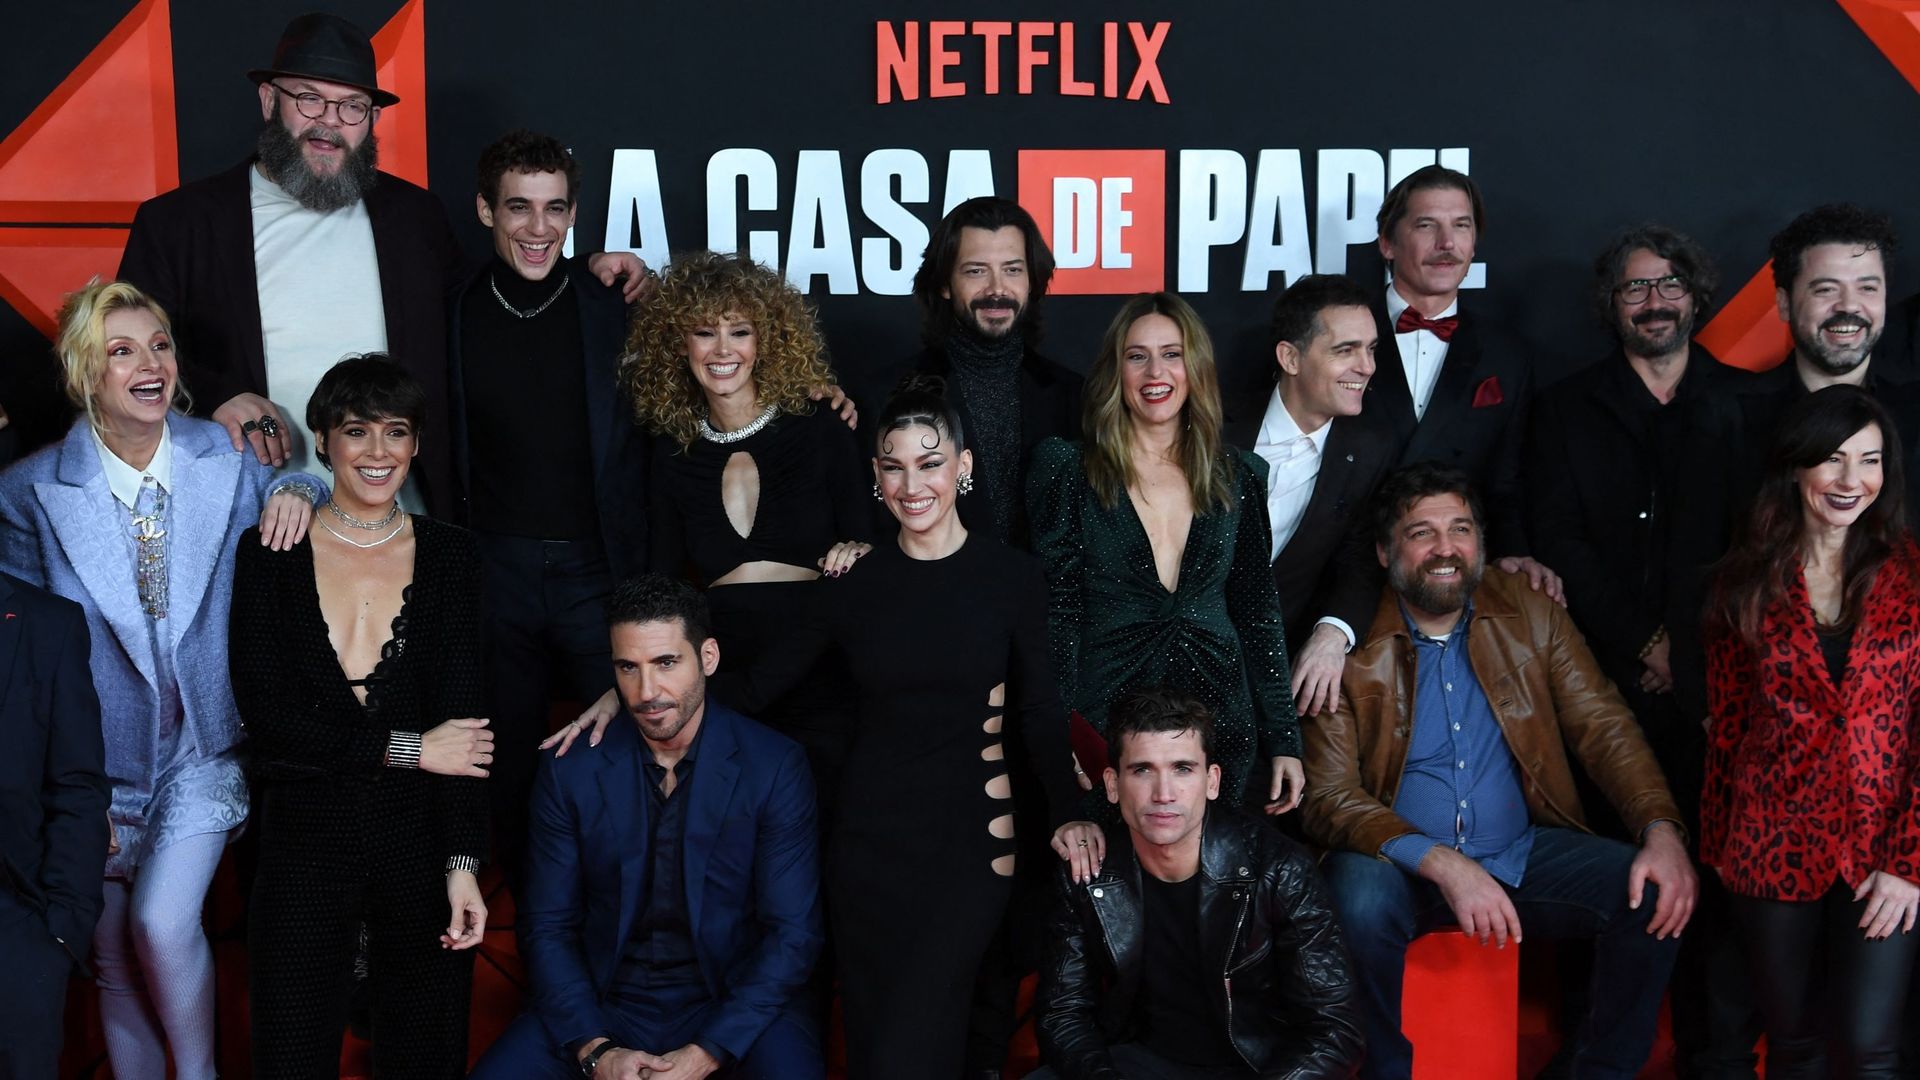 Les membres du casting de "Casa de Papel" posent pour une photo de famille lors de la présentation de la dernière partie de la cinquième saison de l'émission télévisée espagnole "Money Heist" (La Casa de Papel) à l'arène du Palacio Vistalegre à Madrid, le